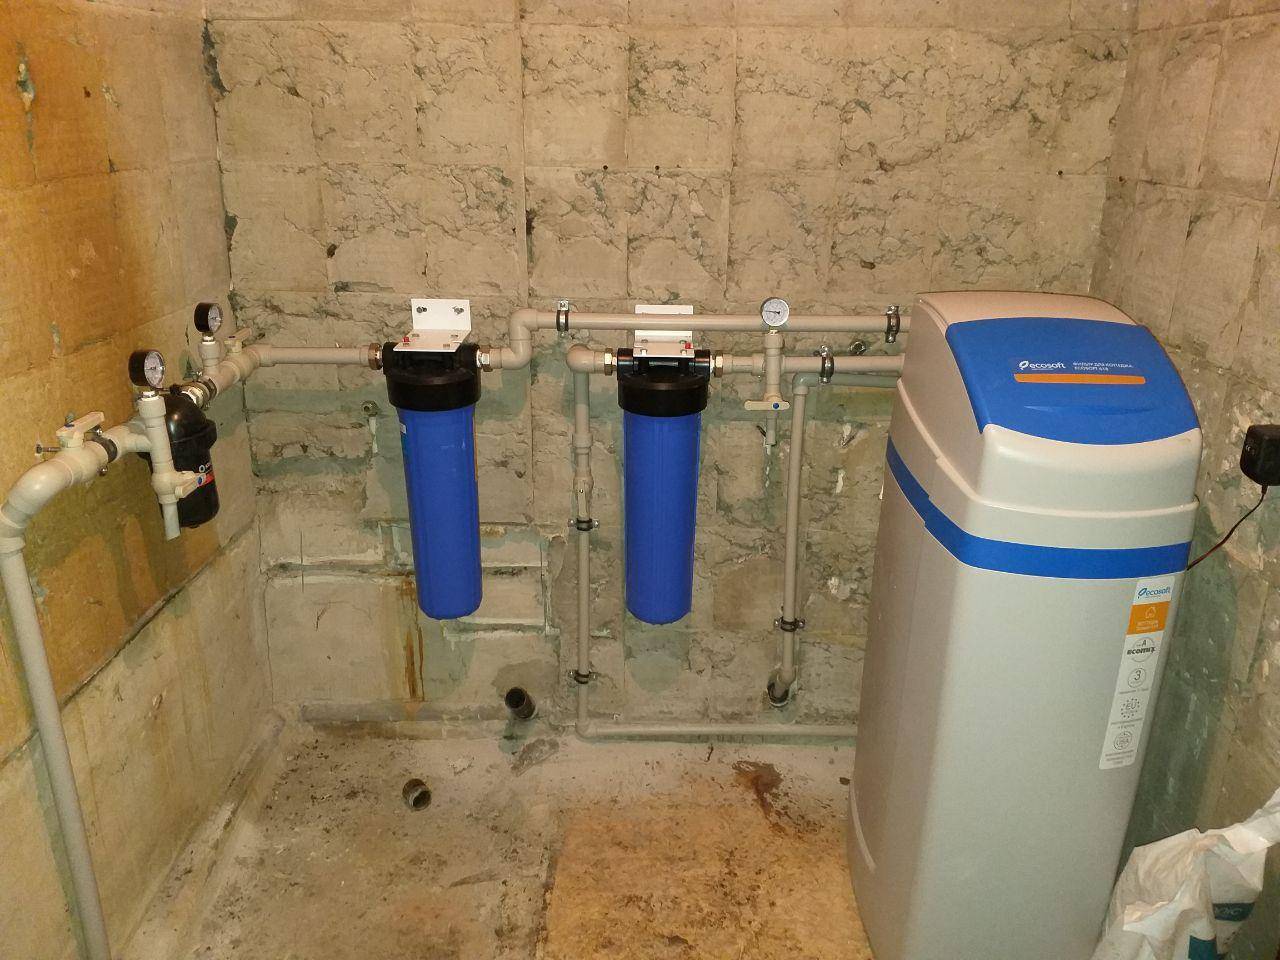 Магистральные фильтры для очистки воды в квартиру - назначение и виды